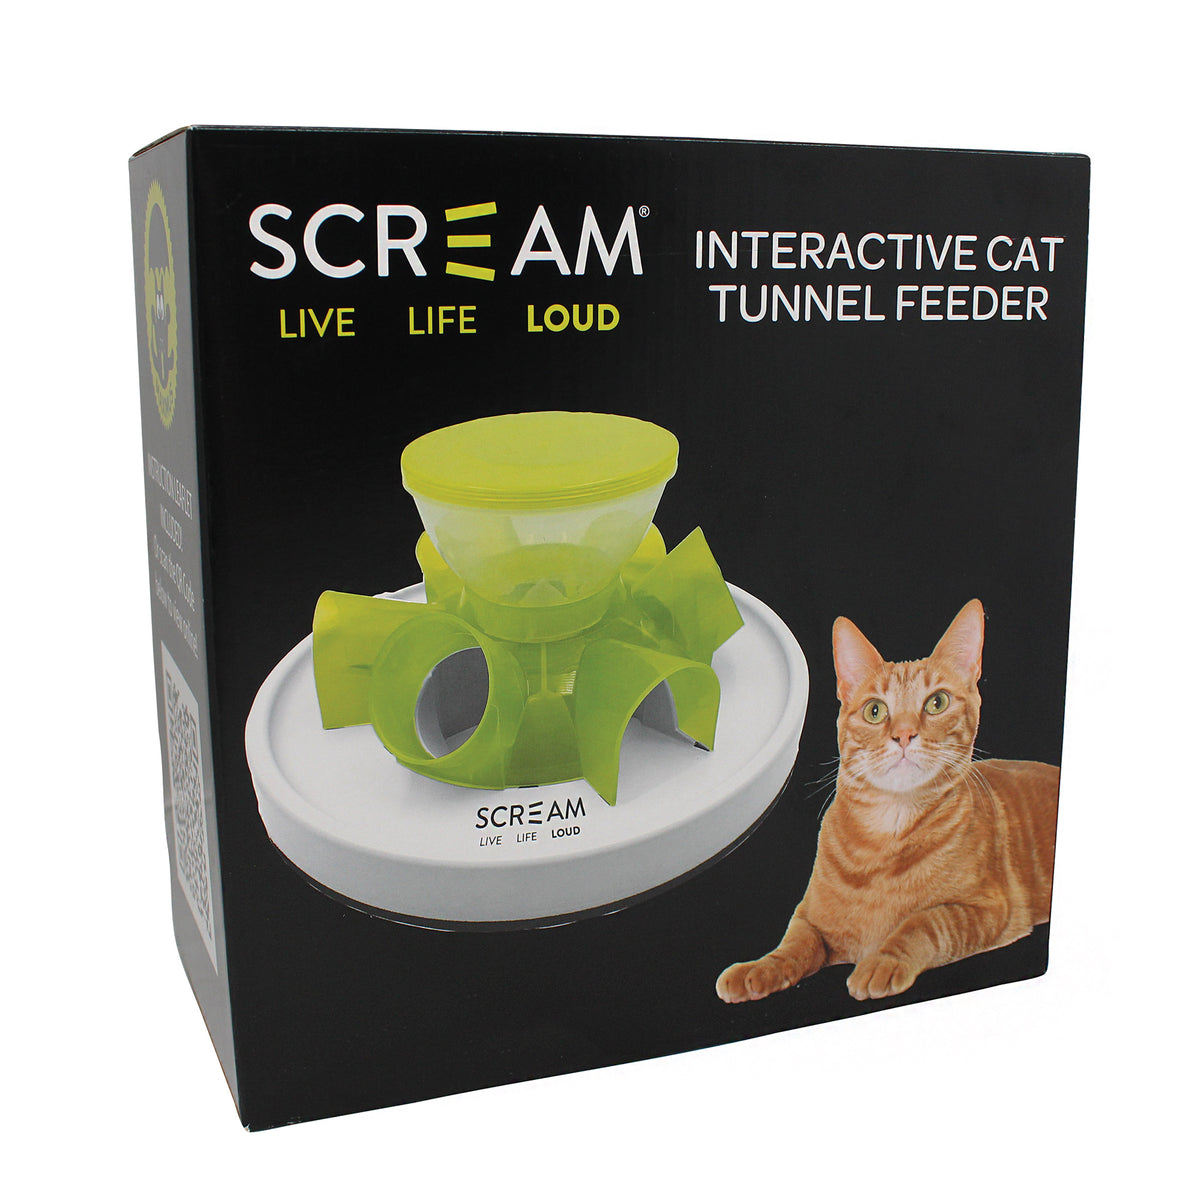 Scream Interactive Cat Tunnel Feeder